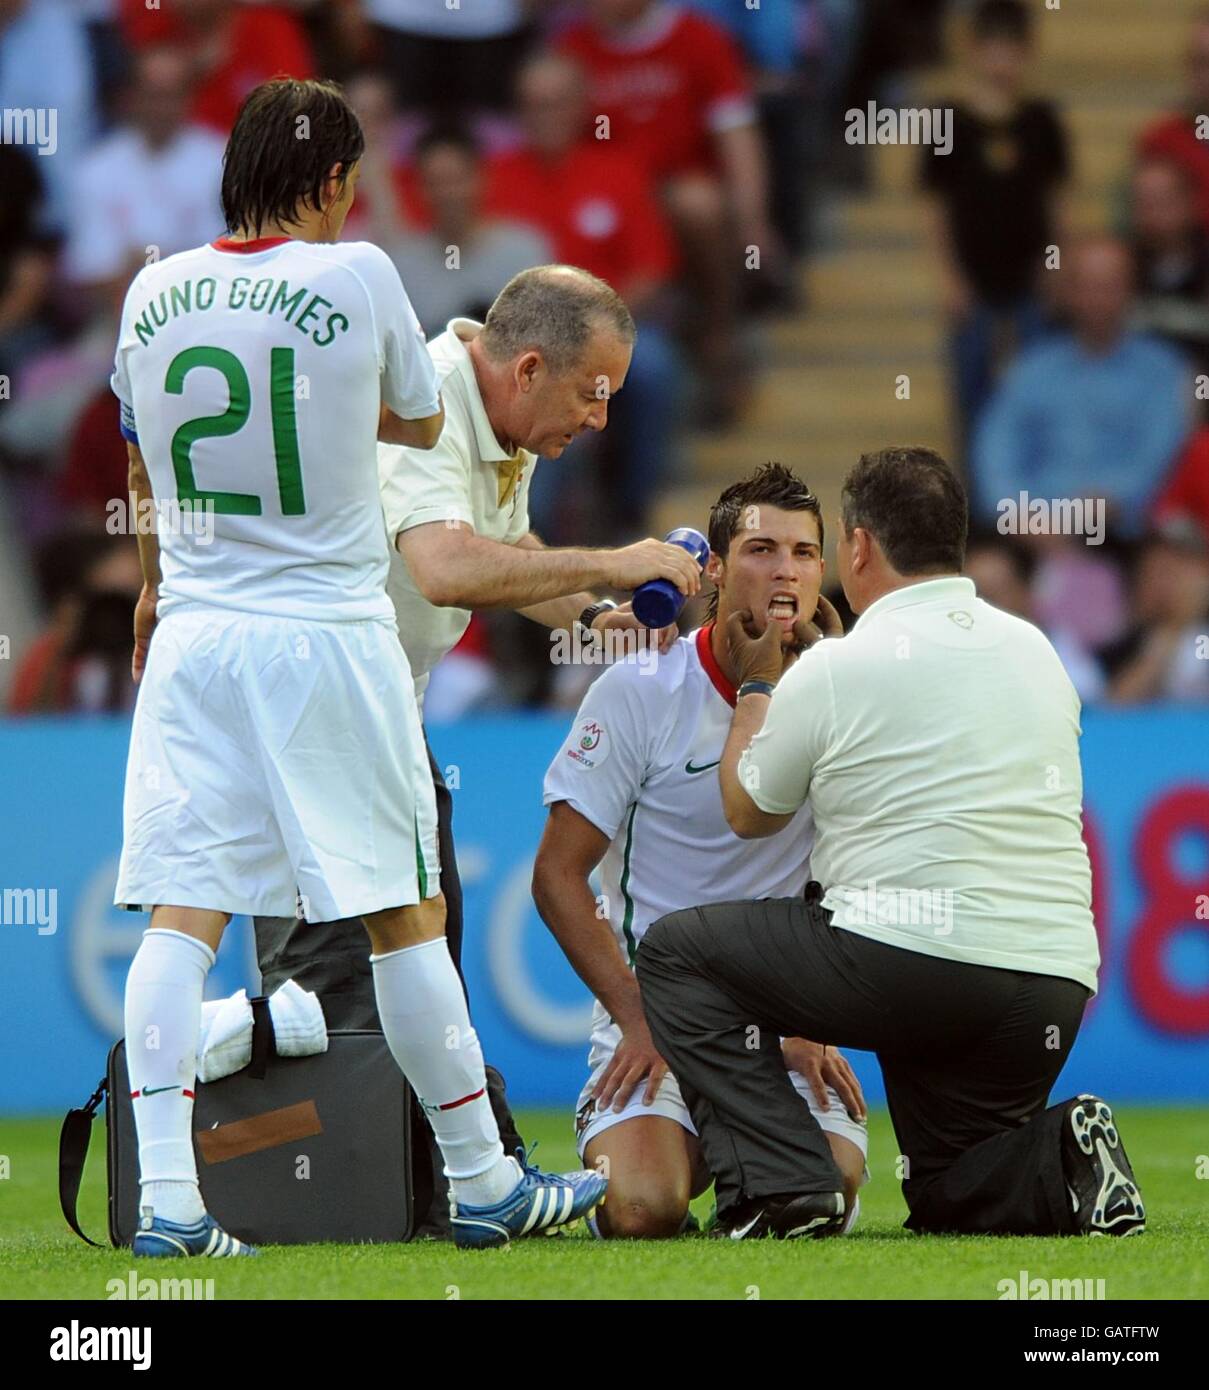 Calcio - Campionato europeo UEFA 2008 - Gruppo A - Repubblica Ceca / Portogallo - Stade de Geneve. Cristiano Ronaldo, in Portogallo, riceve un trattamento per una lesione. Foto Stock